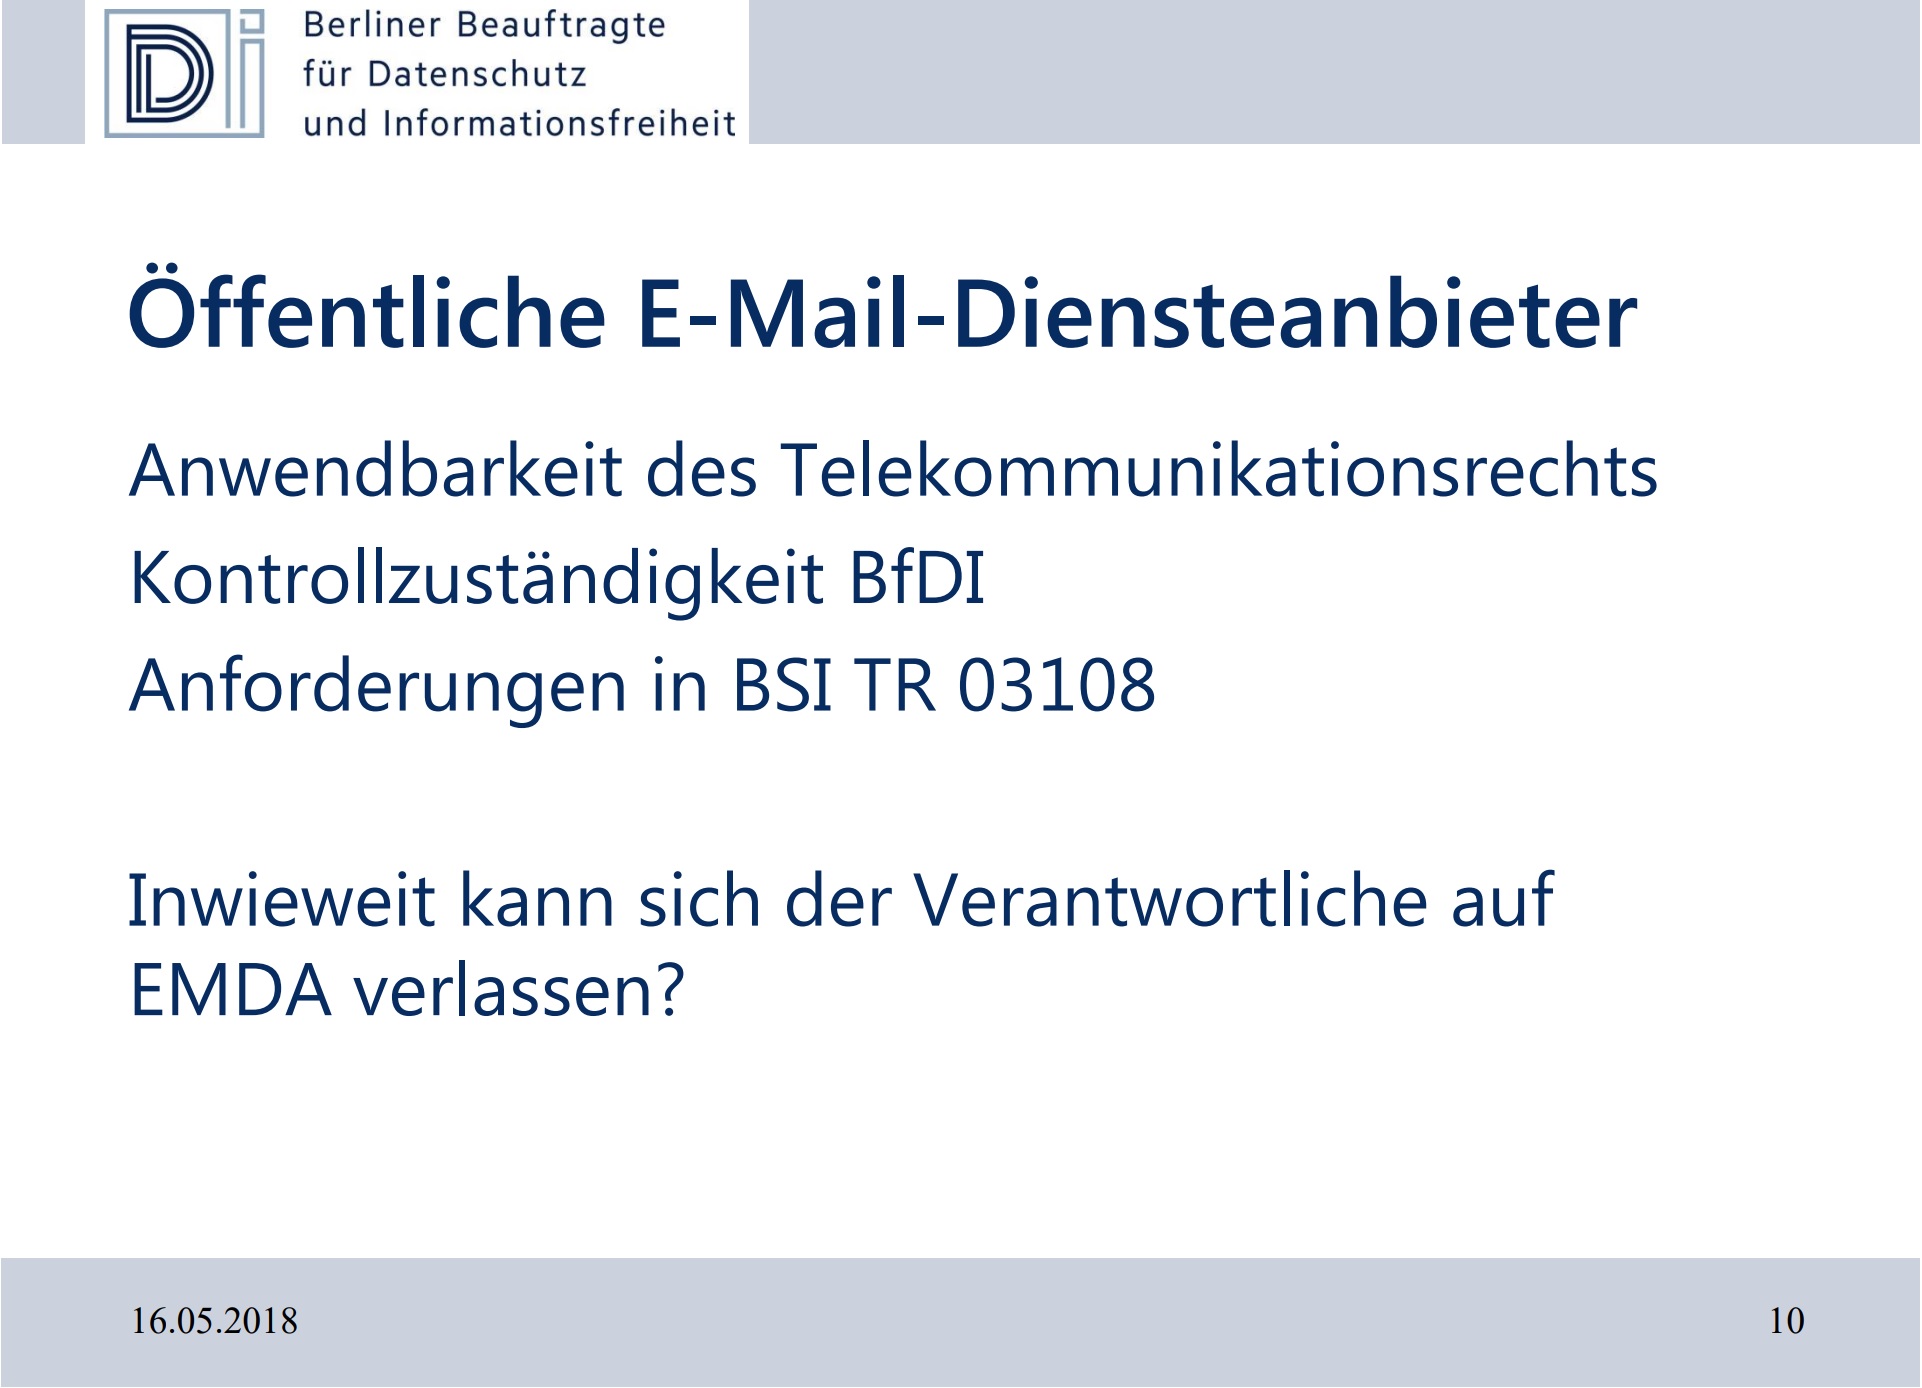 Öffentliche E-Mail-Diensteanbieter: Anwendbarkeit des Telekommunikationsrechts, Kontrollzuständigkeit BfDI, Anforderungen in BSI TR 03108. Inwieweit kann sich der Verantwortliche auf EMDA verlassen?